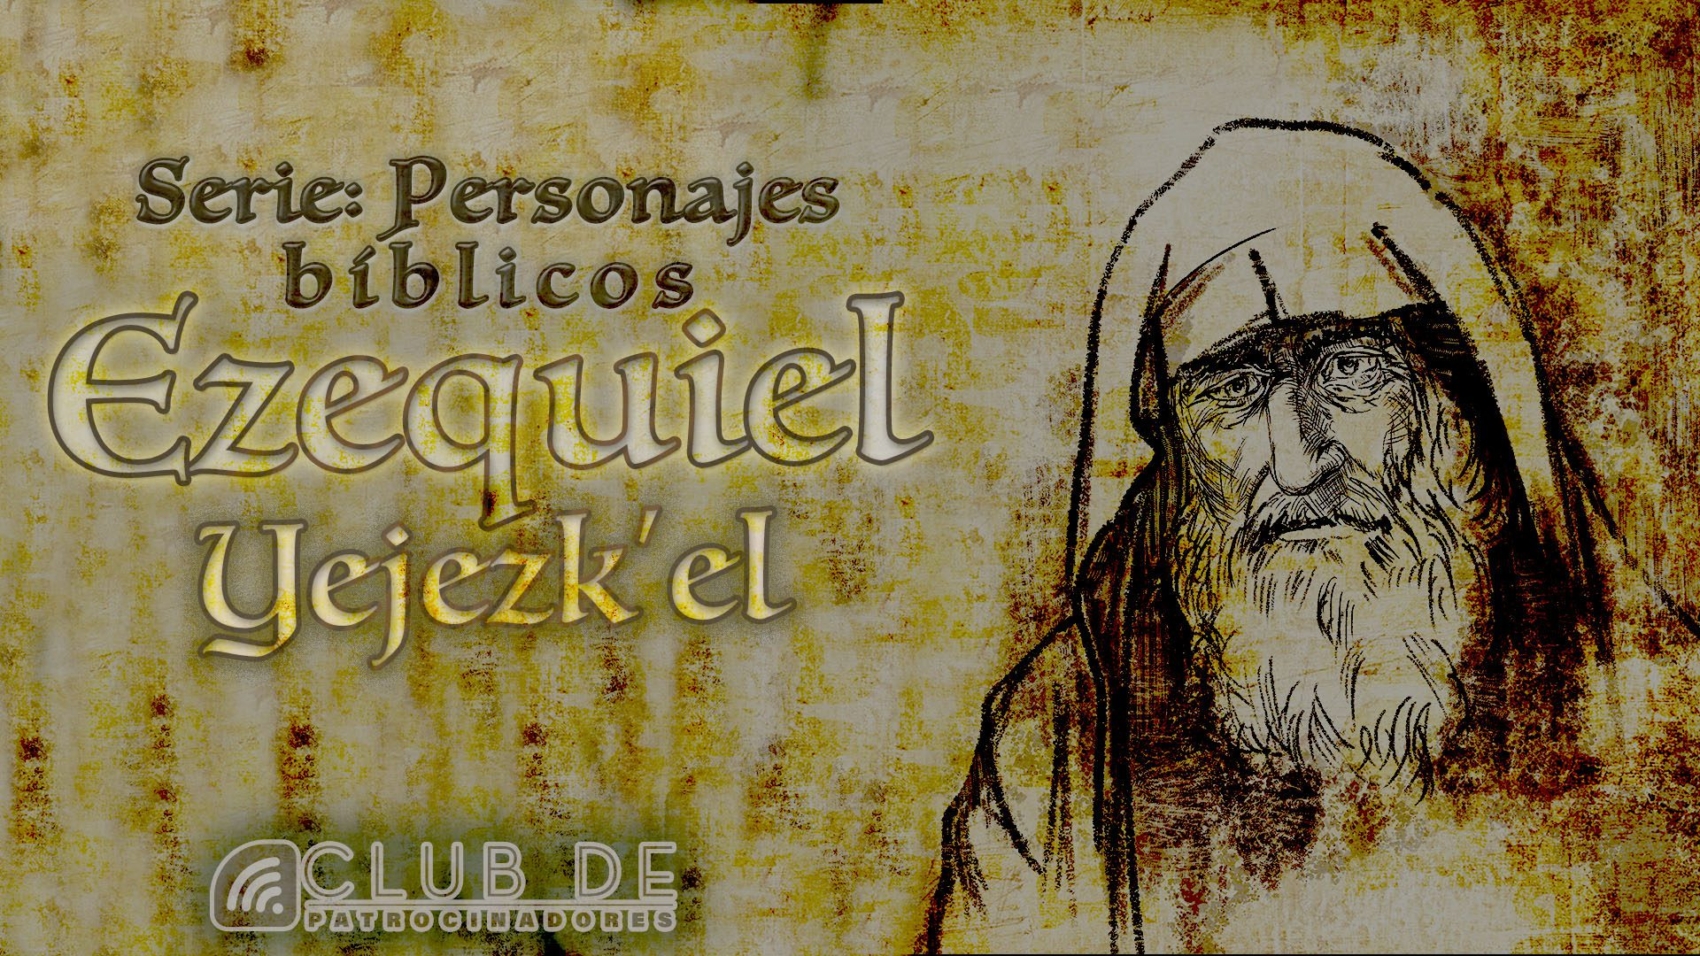 CP_65 -personaje biblico- Ezequiel - 1920x1080